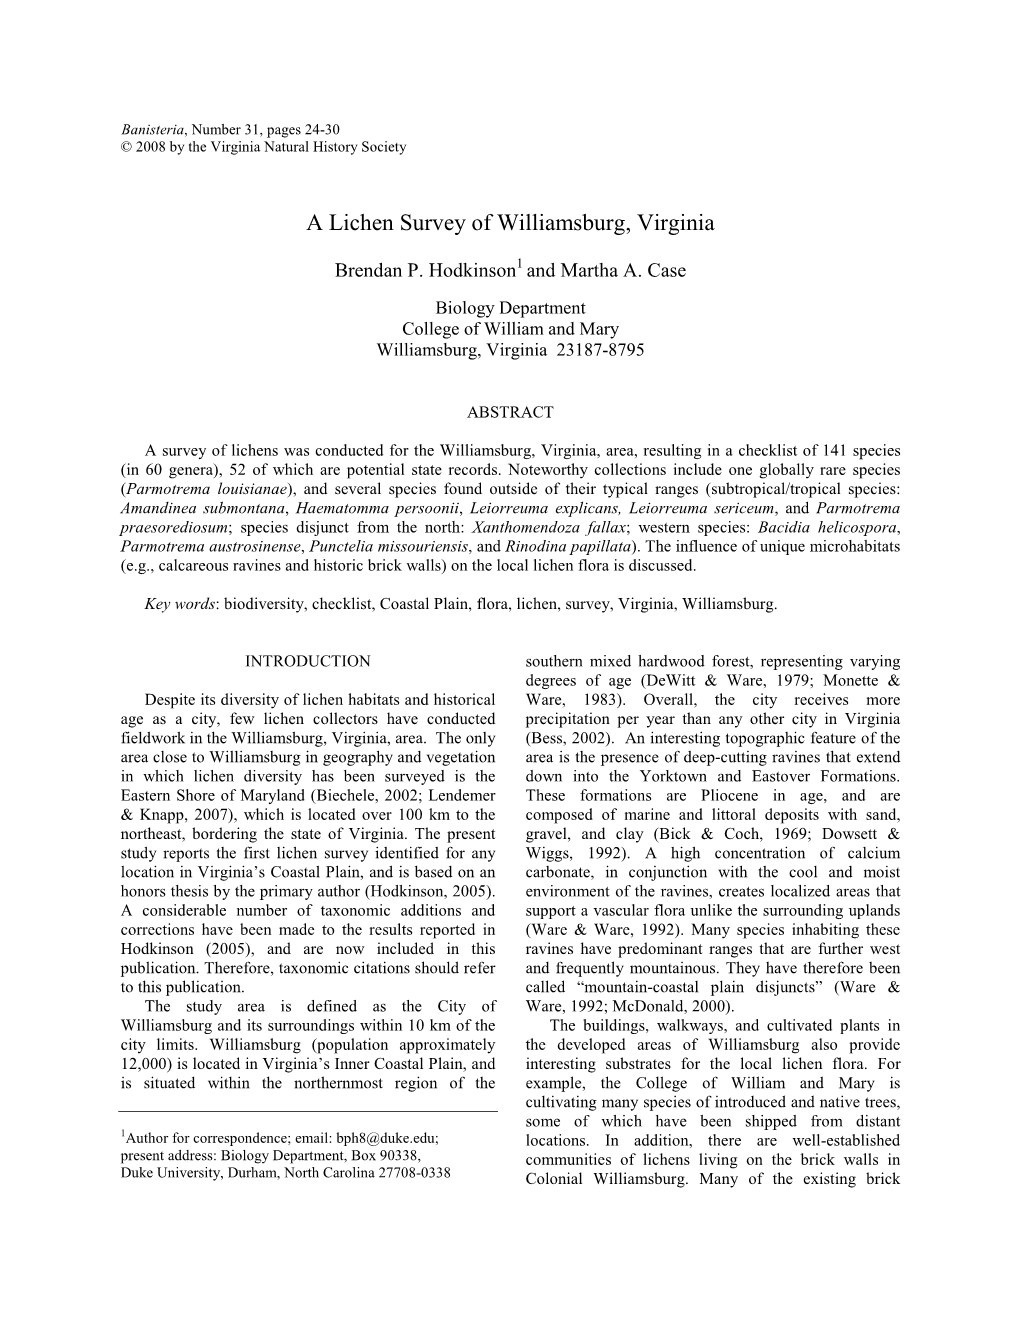 A Lichen Survey of Williamsburg, Virginia